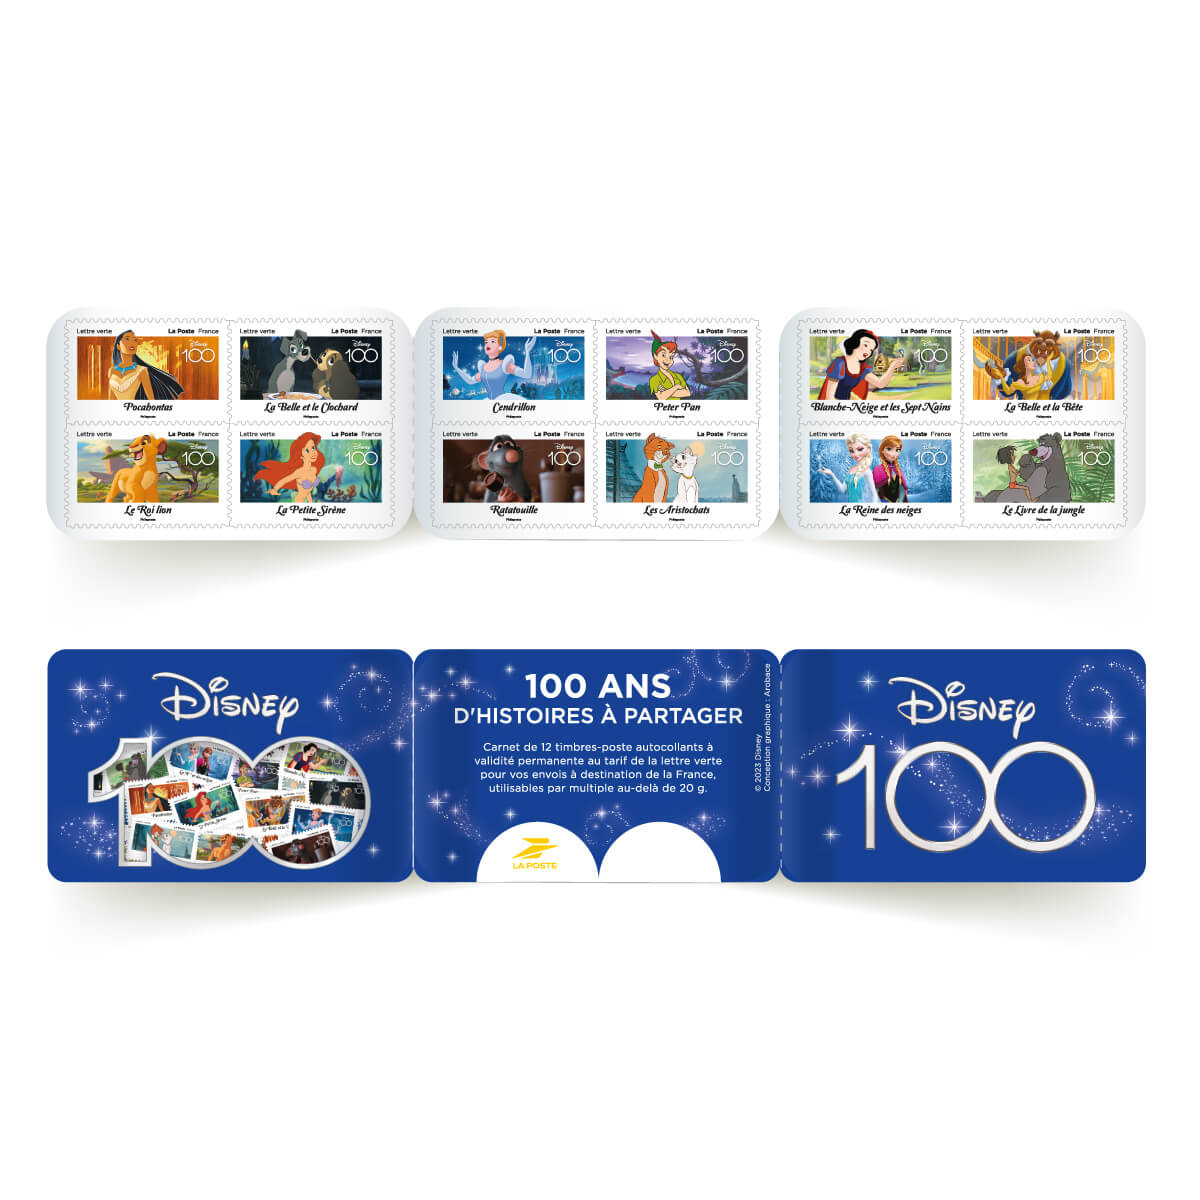 Carnet de timbres Disney pour fêter les 100 ans